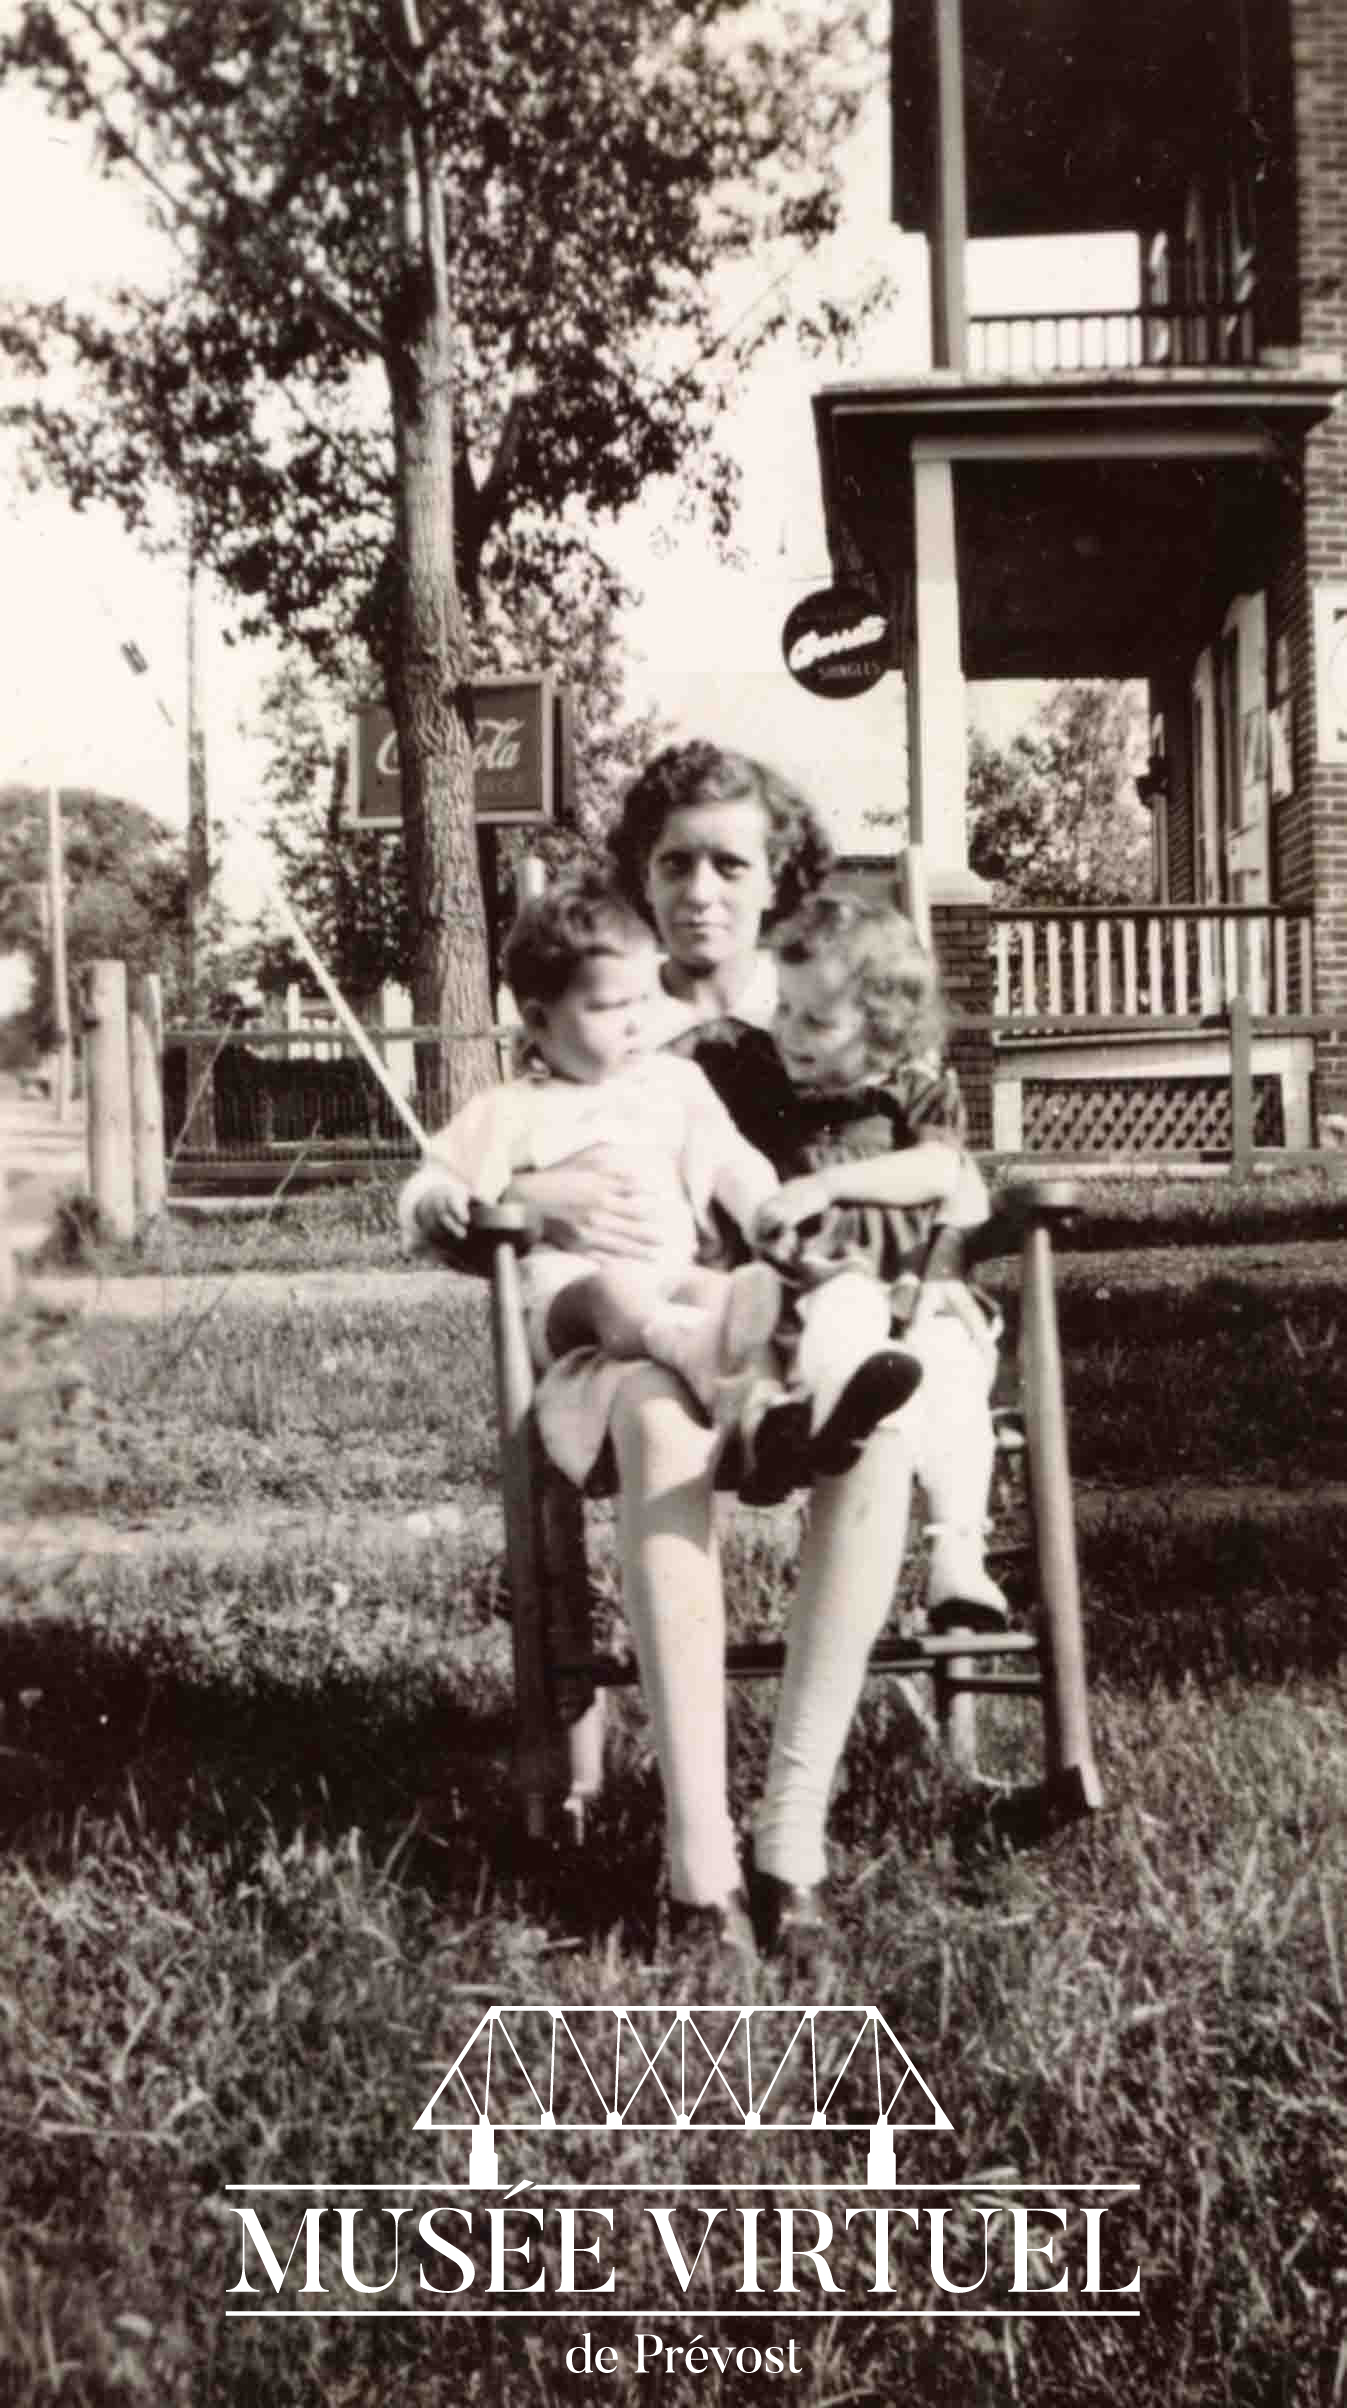 4. Marie-Marguerite gardant deux enfants tout près du magasin Venne en 1944 - Collection de la famille Brosseau